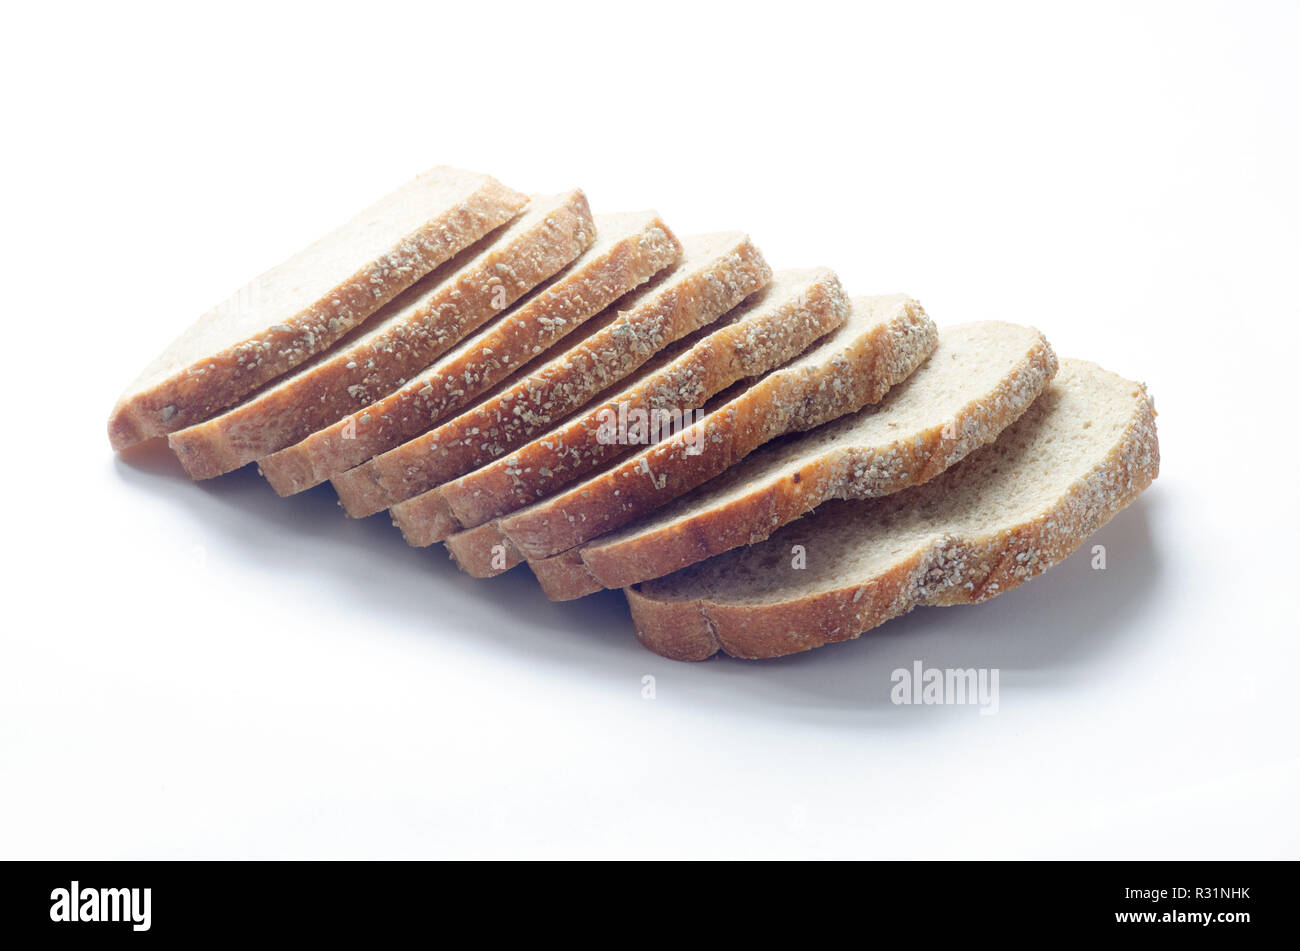 Grani antichi riquadro toscano a fette di pane con tutto il grano e le farine di farro, cereali integrali e semi di lino sul bianco. Foto Stock